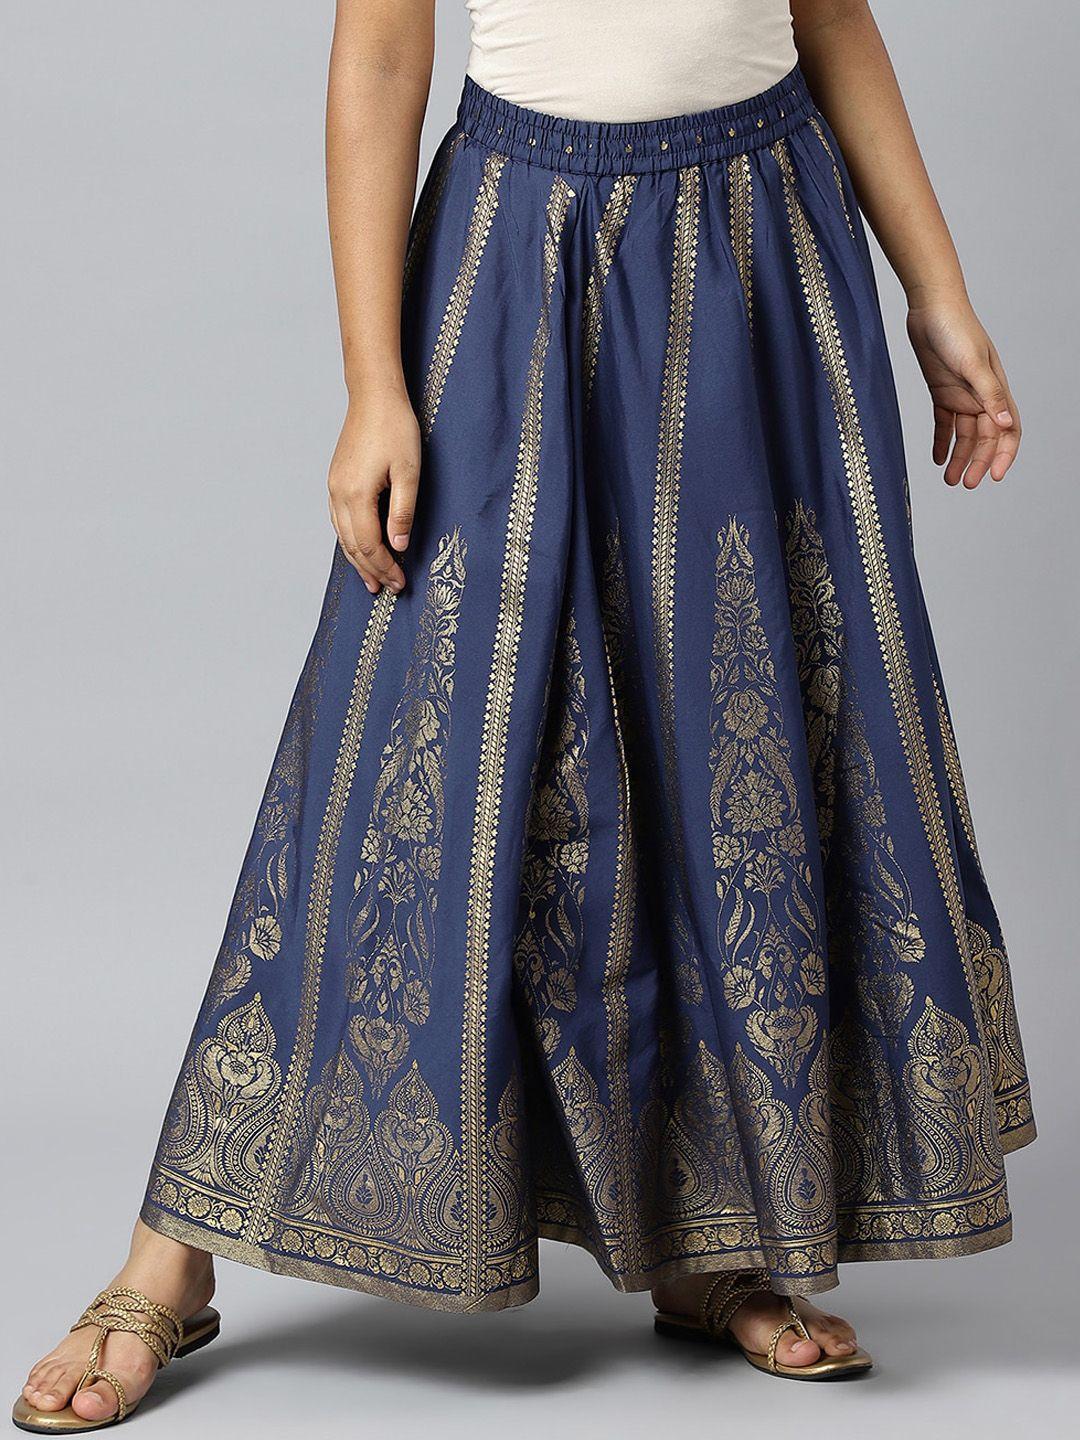 elleven women navy-blue & golden printed flared maxi skirt